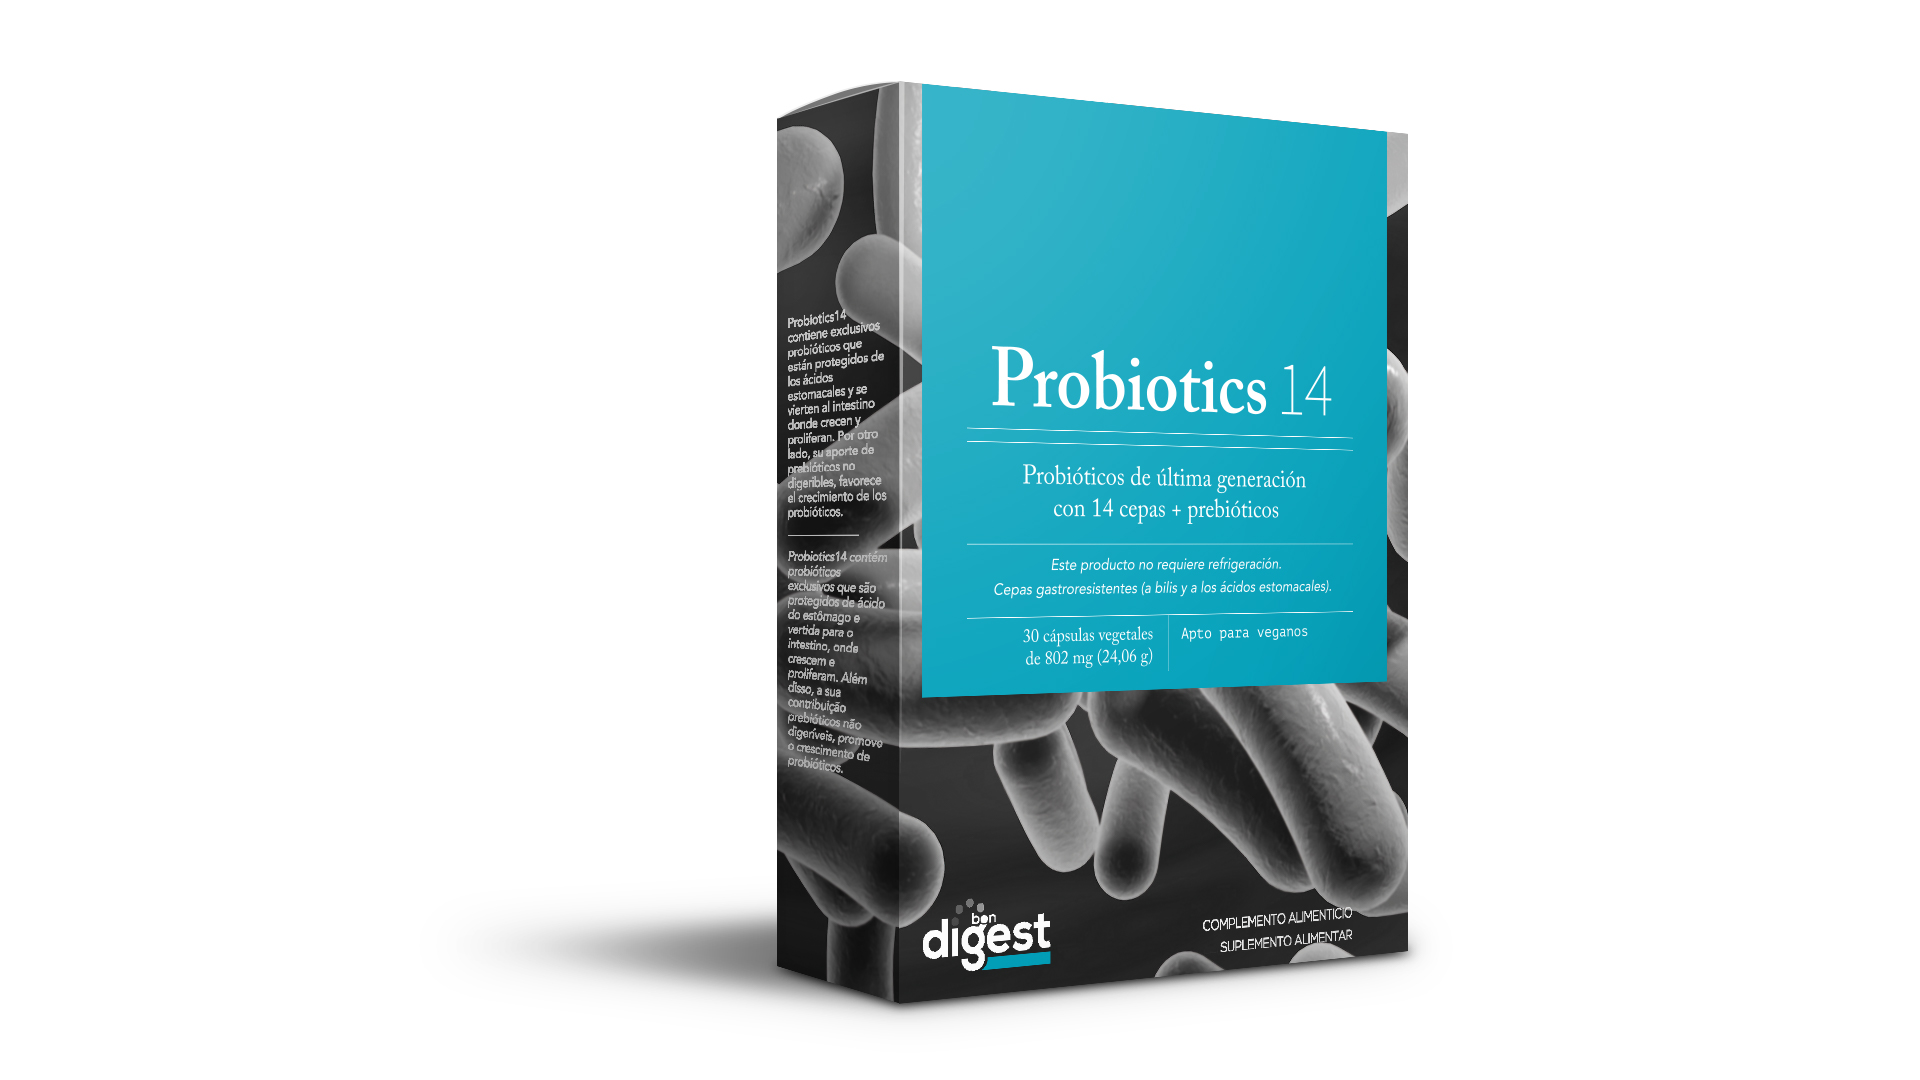 Probiotics14